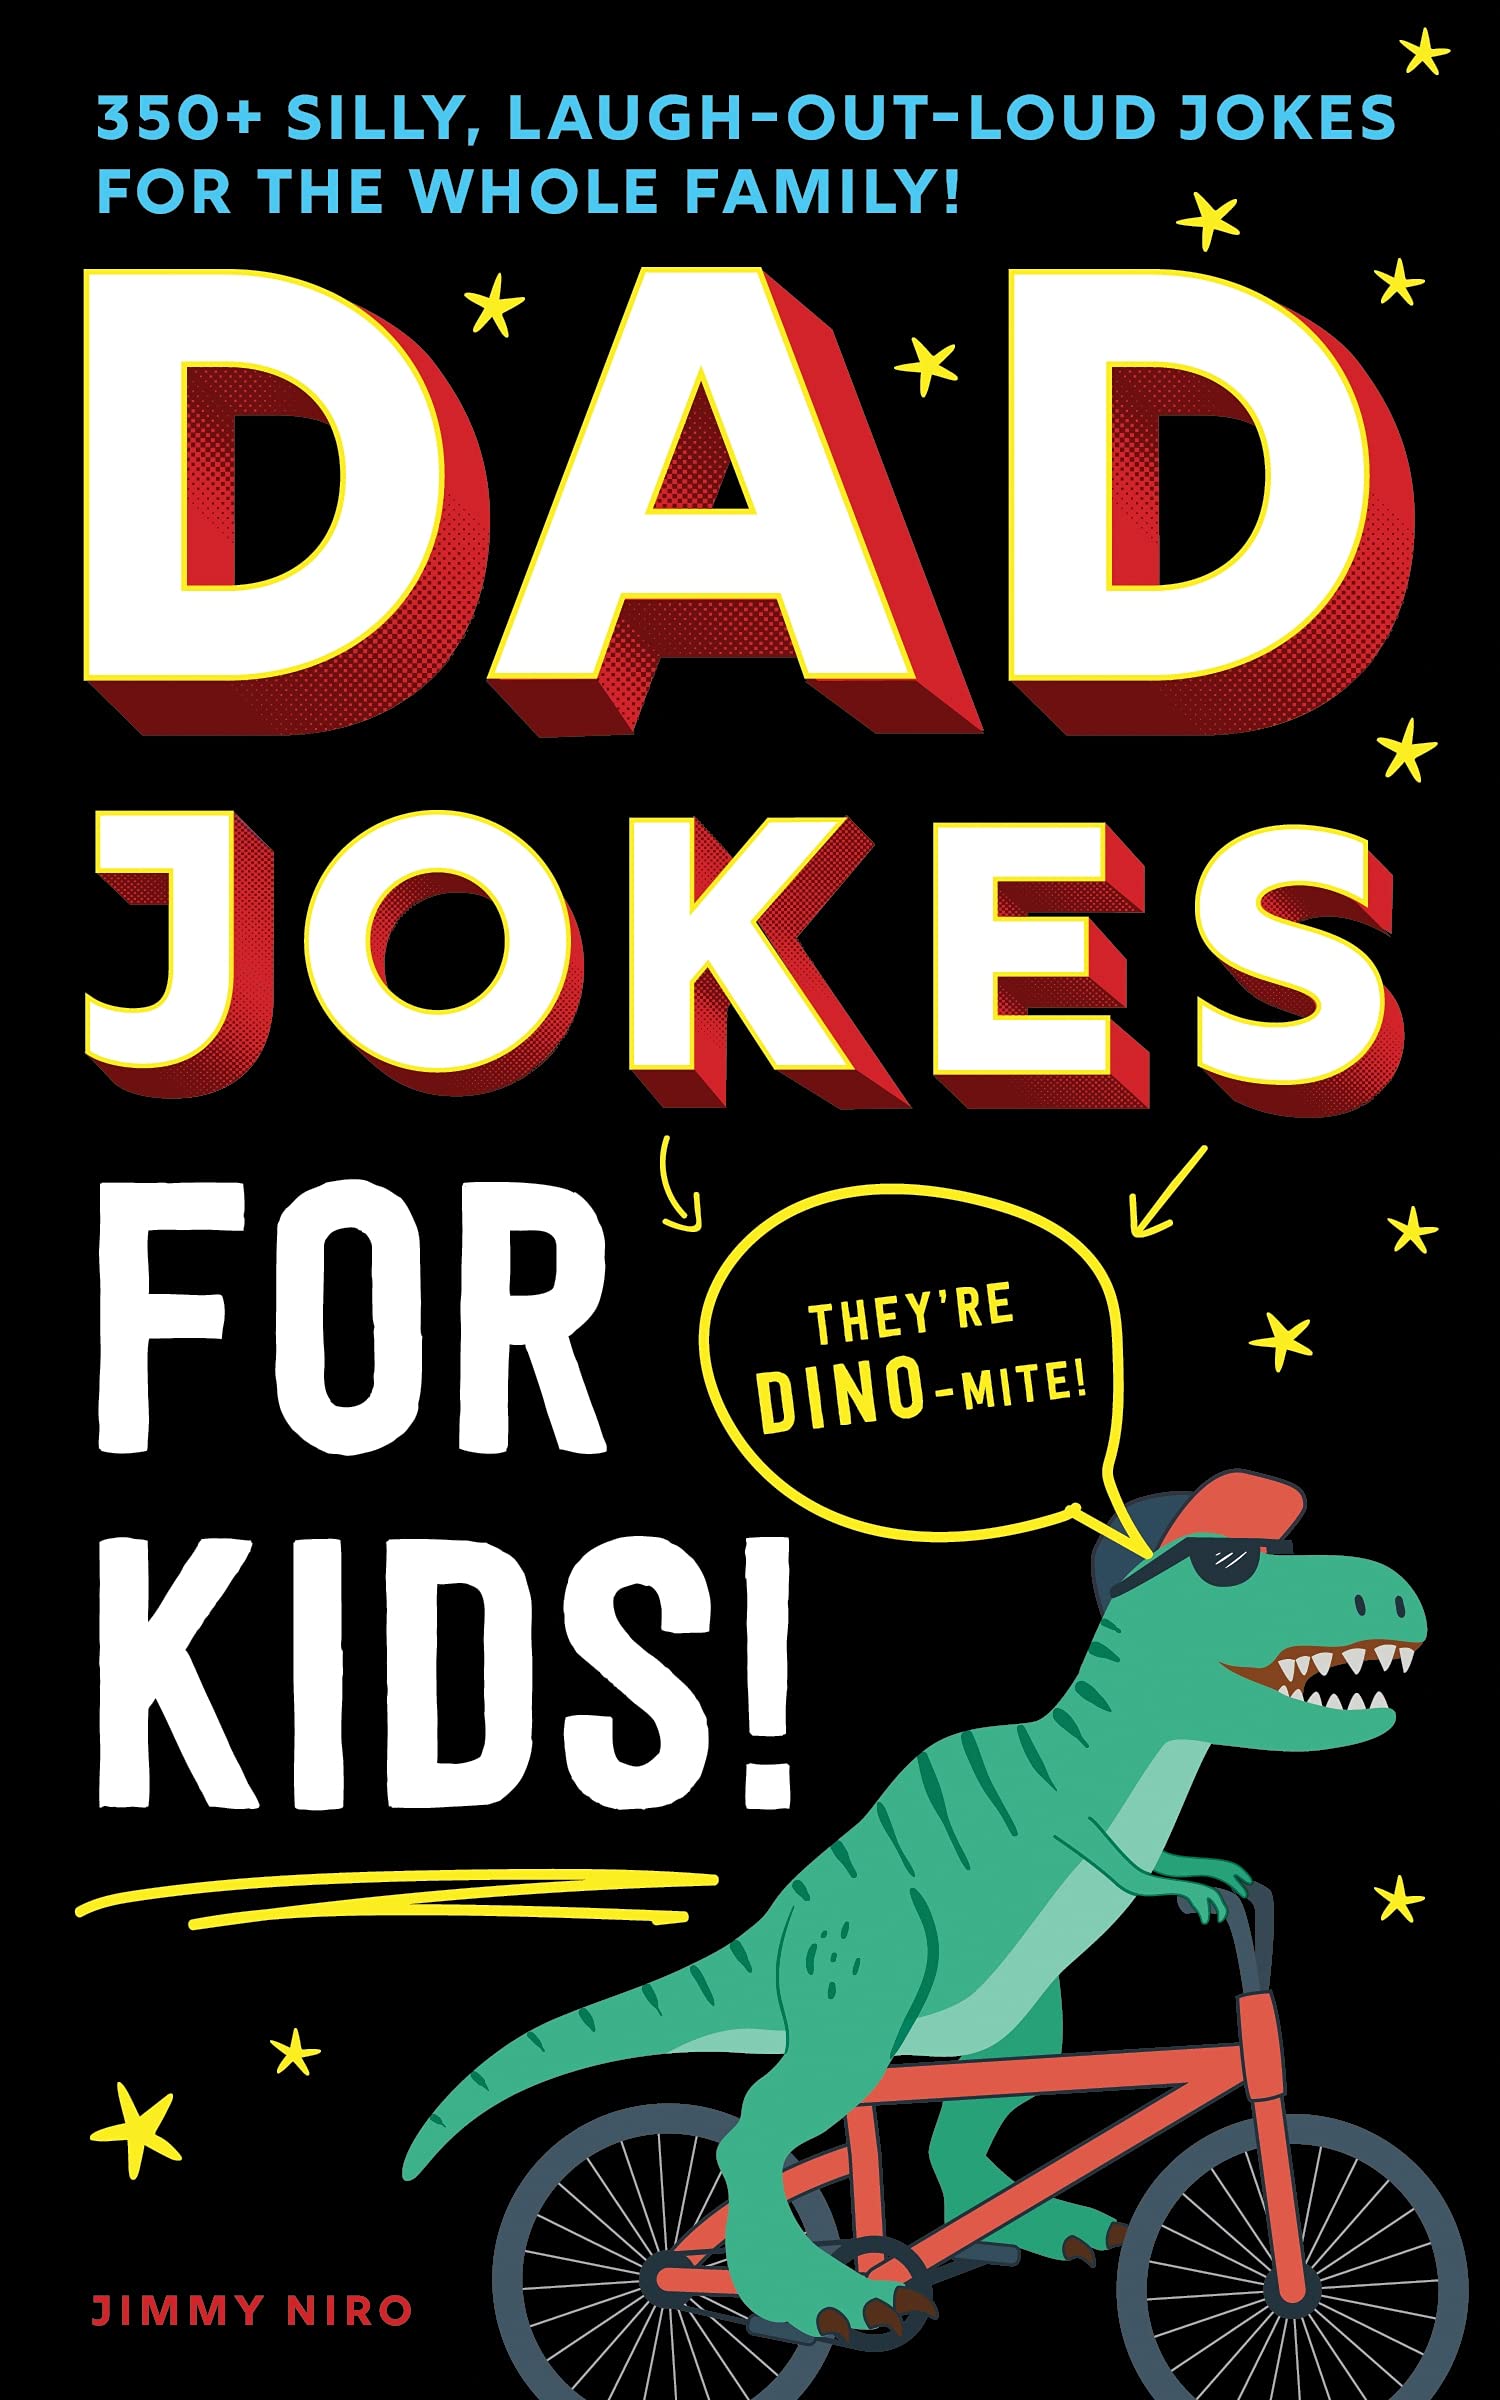 Dad Jokes for Kids